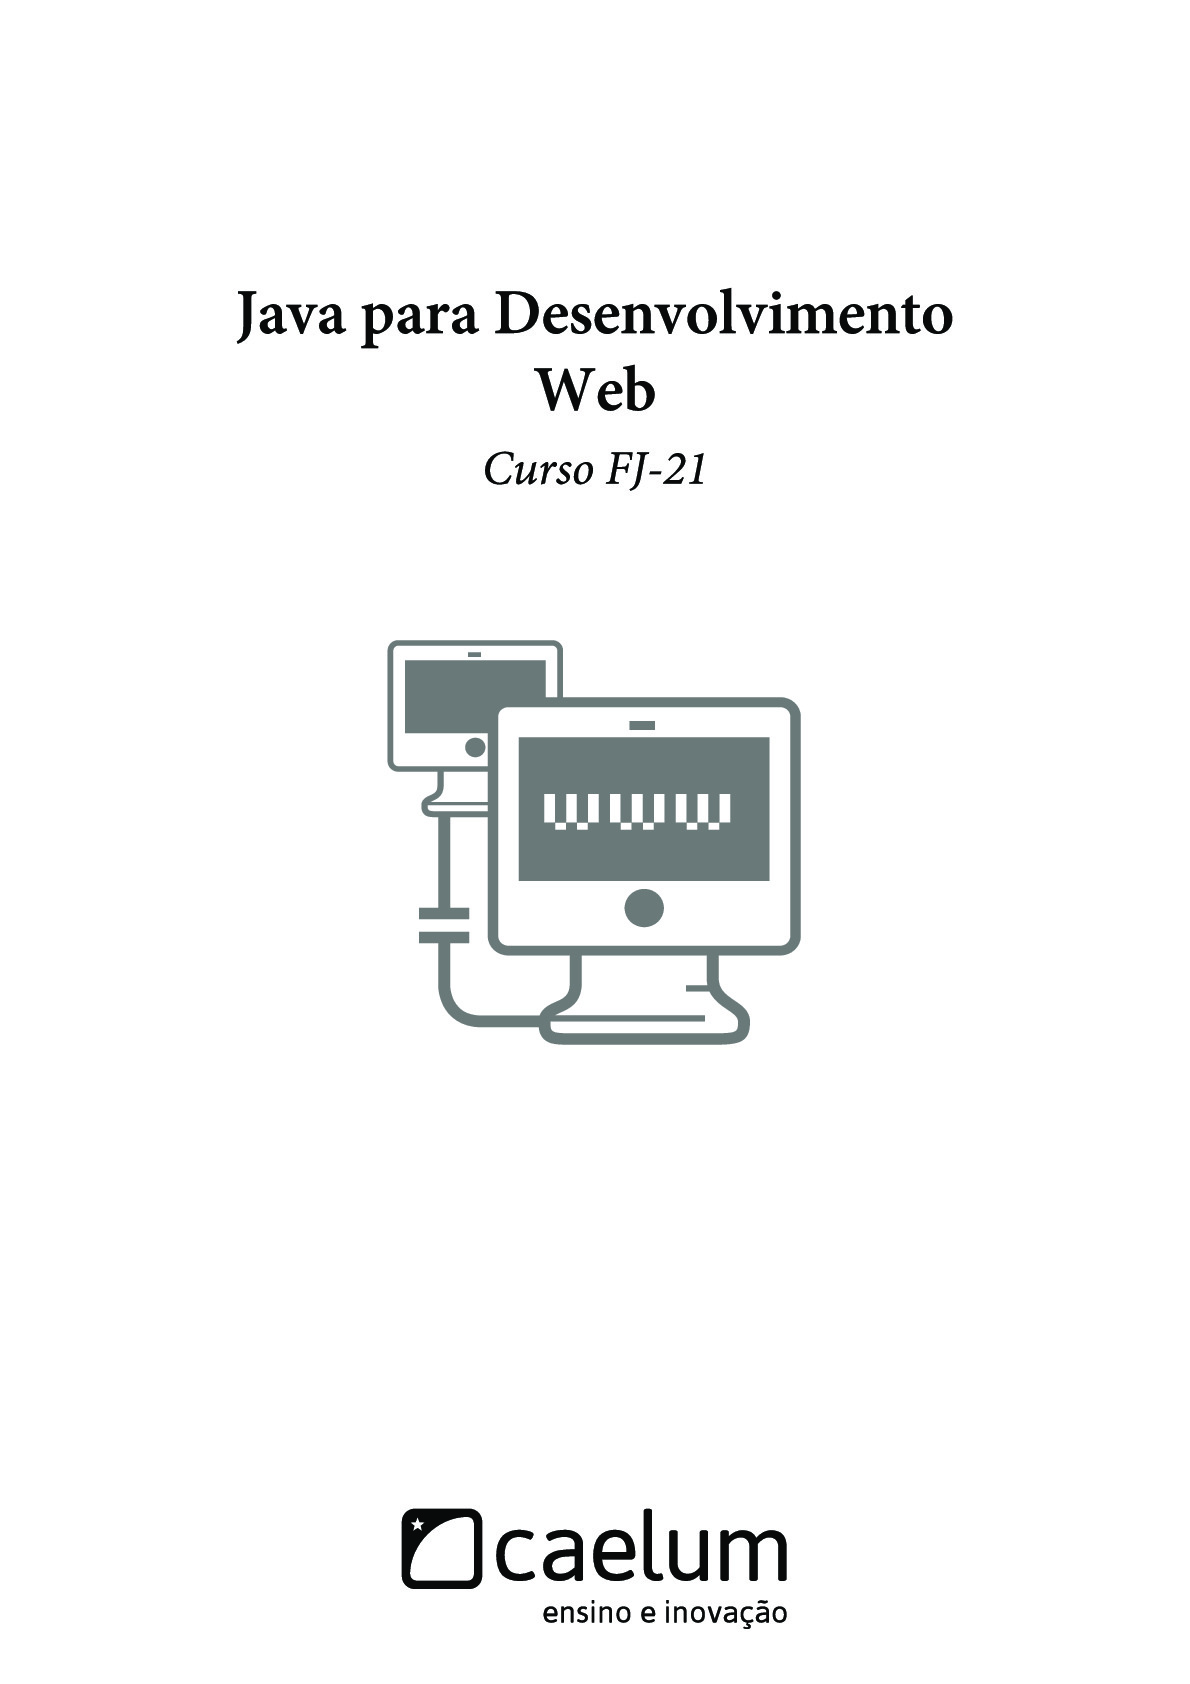 Java para Desenvolvimento Web – Caelum, FJ-21